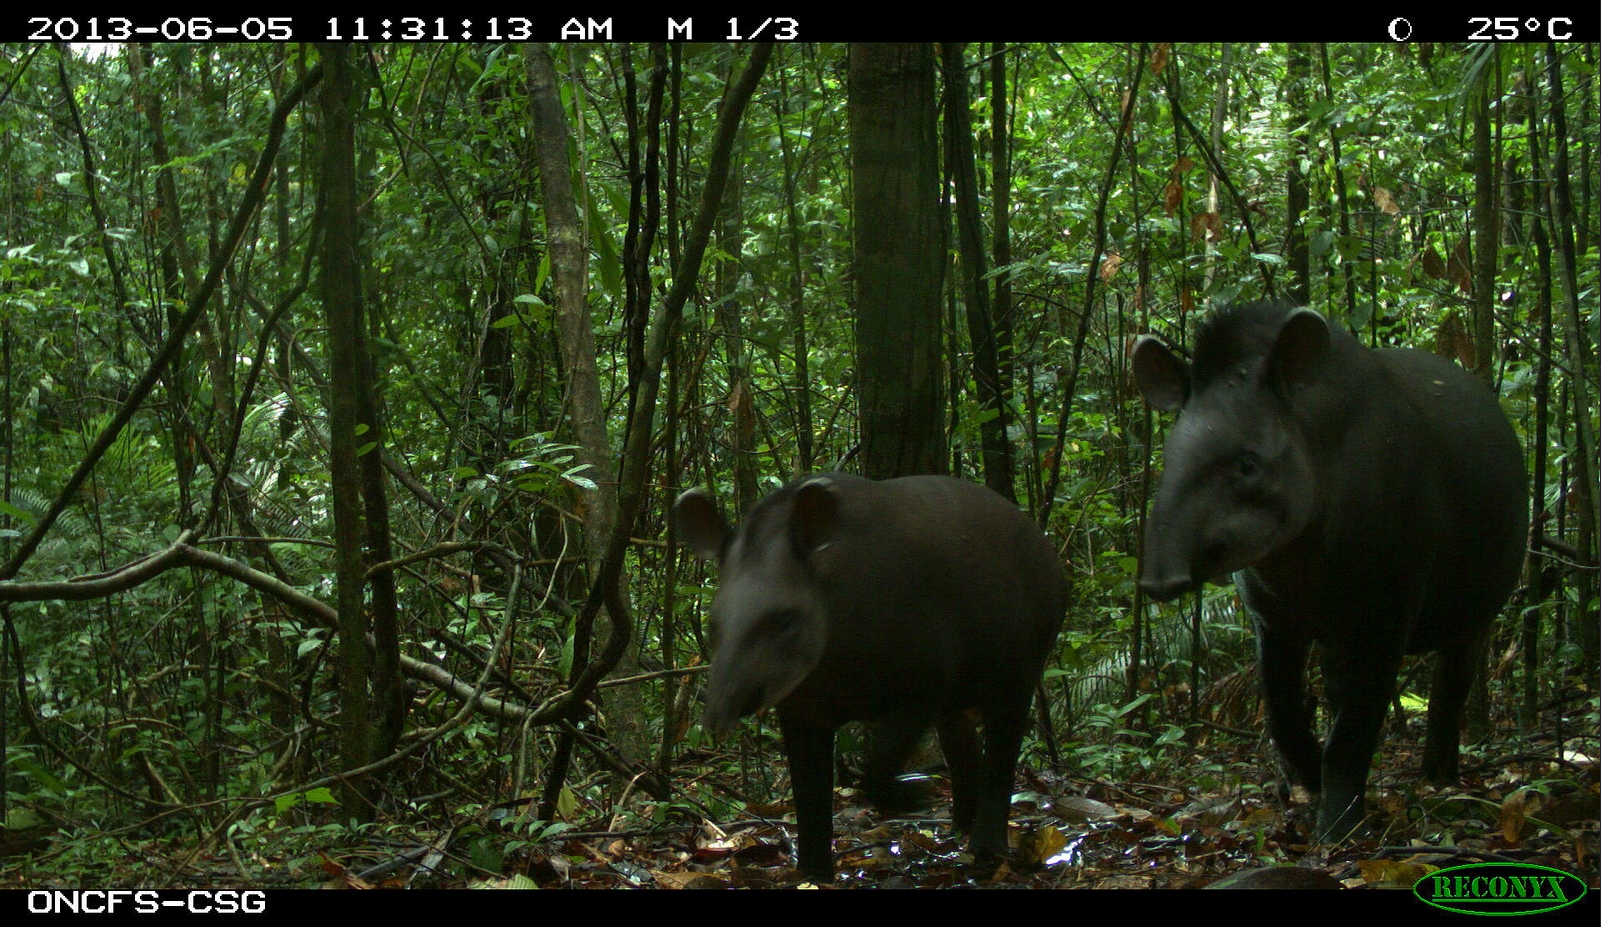 cnesj_csg_tapirs.jpg